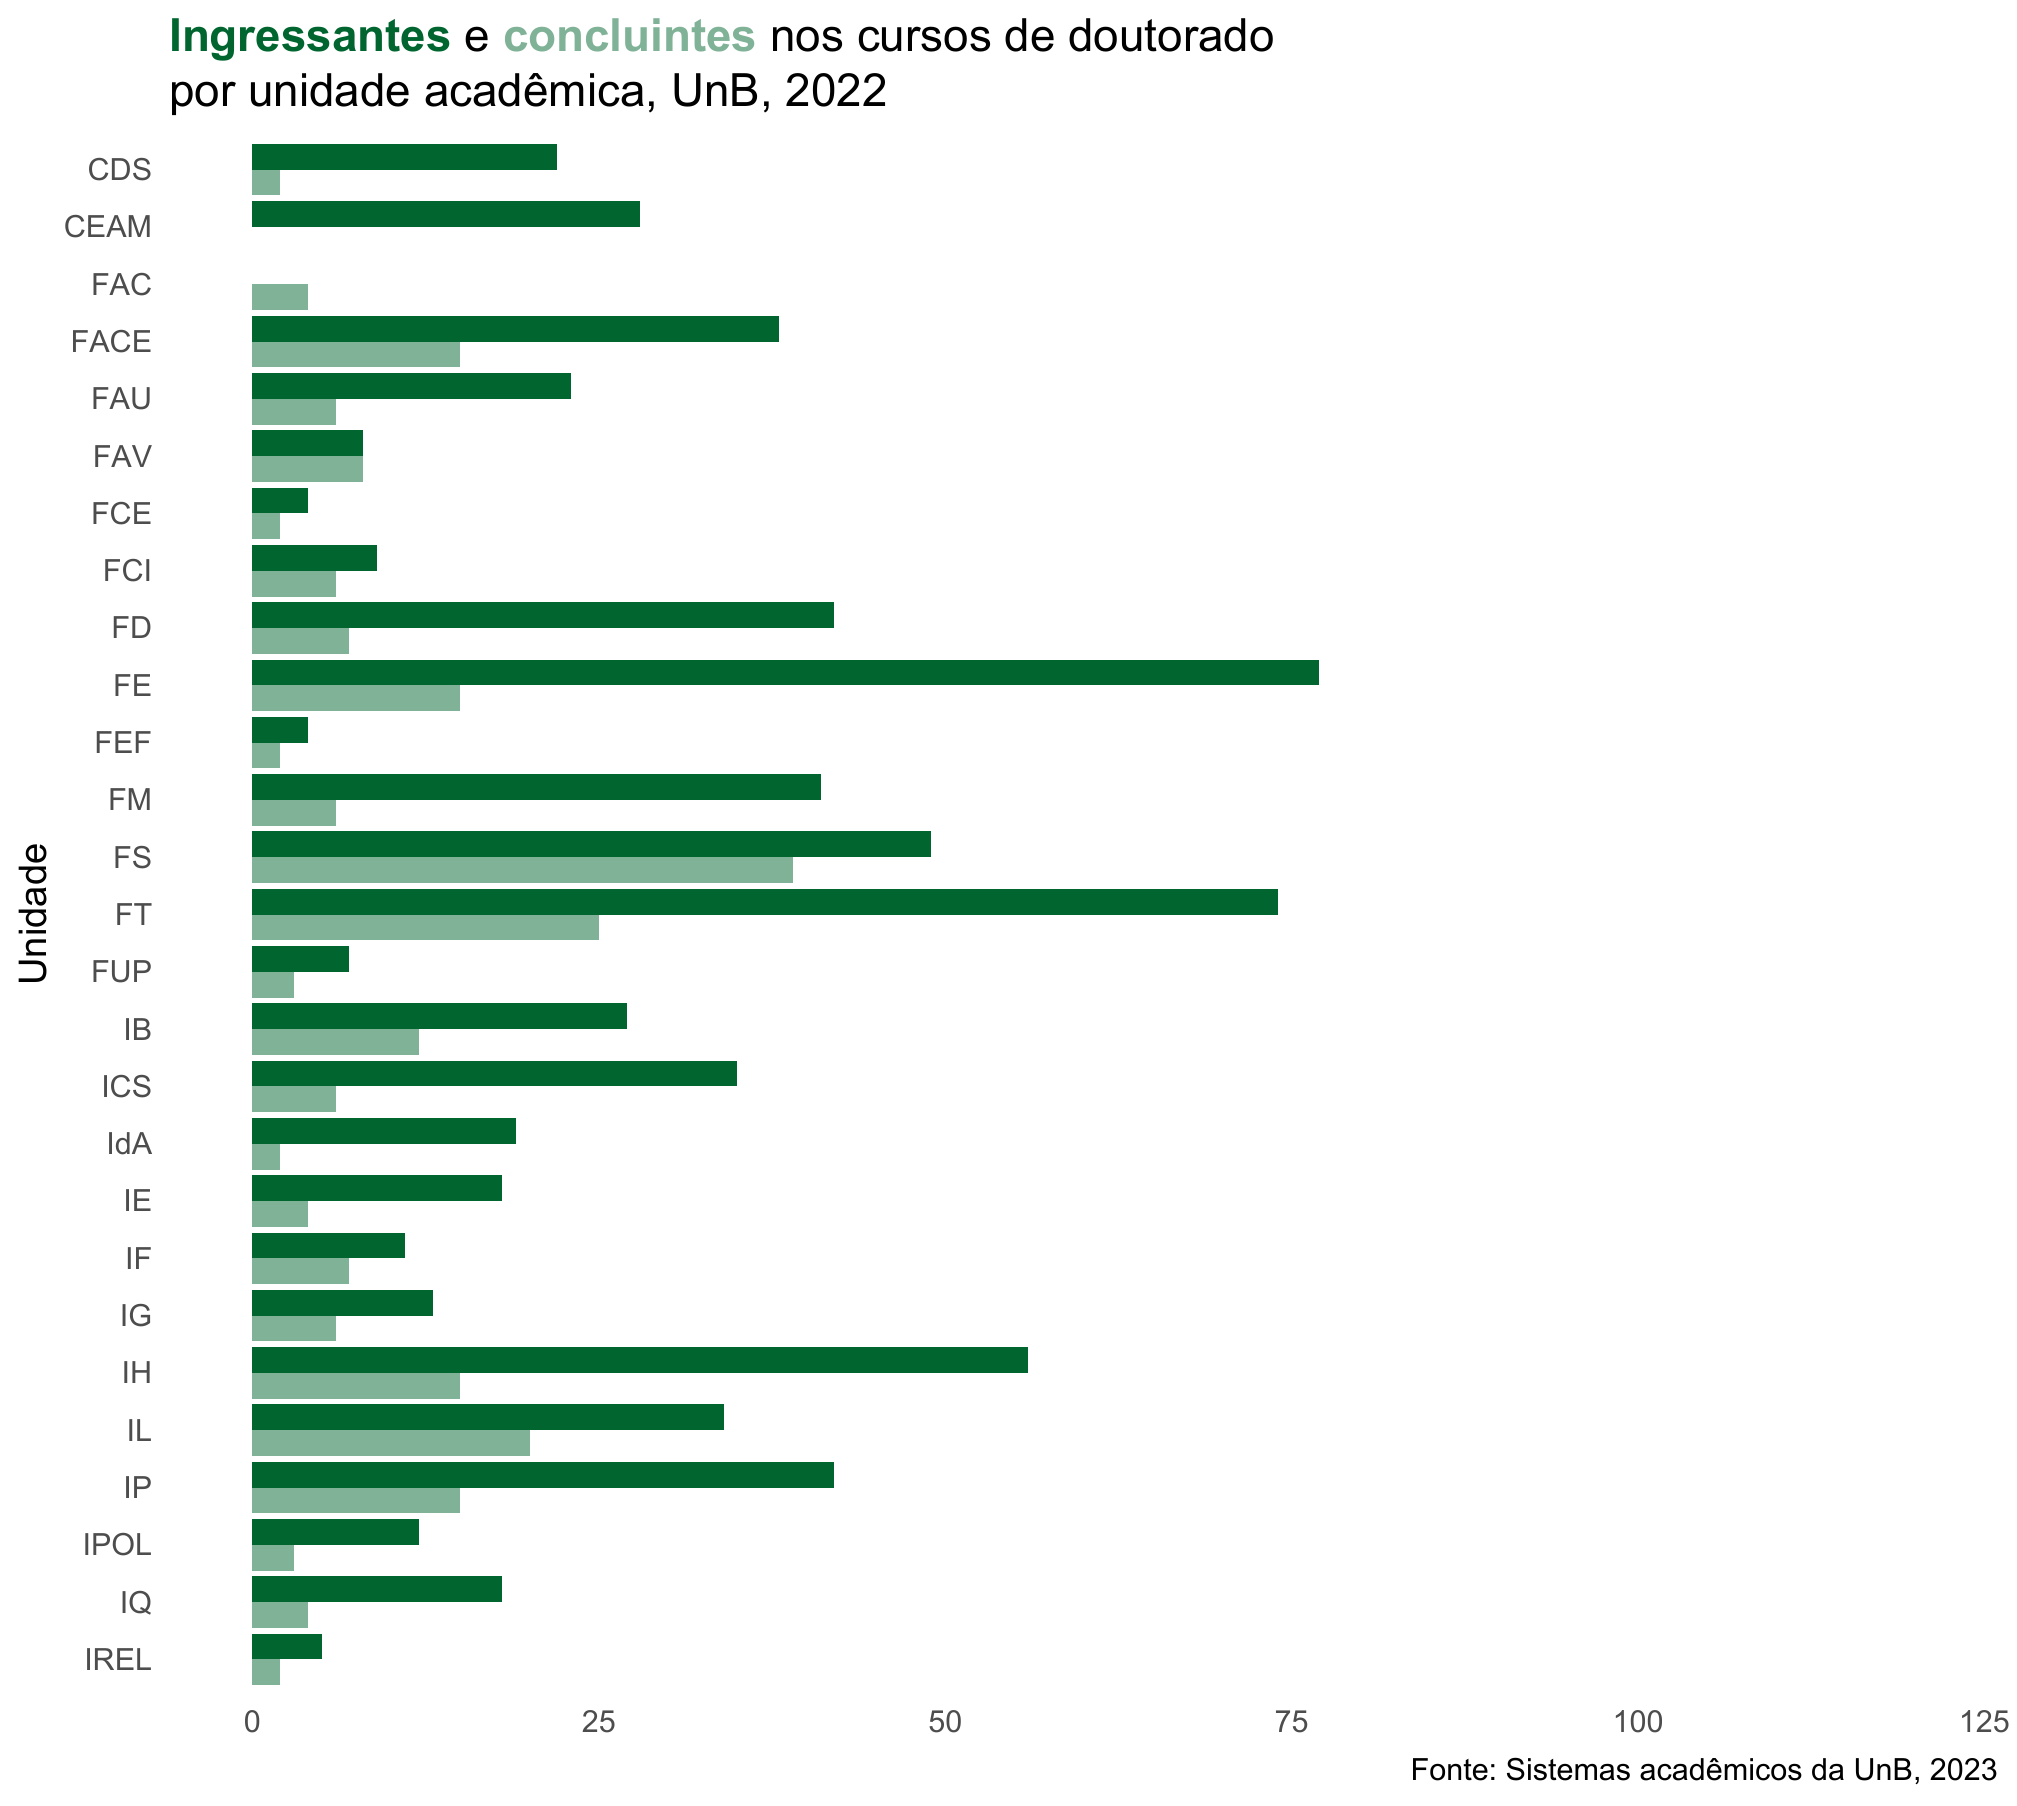 Ingressantes e concluintes nos cursos de doutorado por unidade acadêmica, UnB, 2022